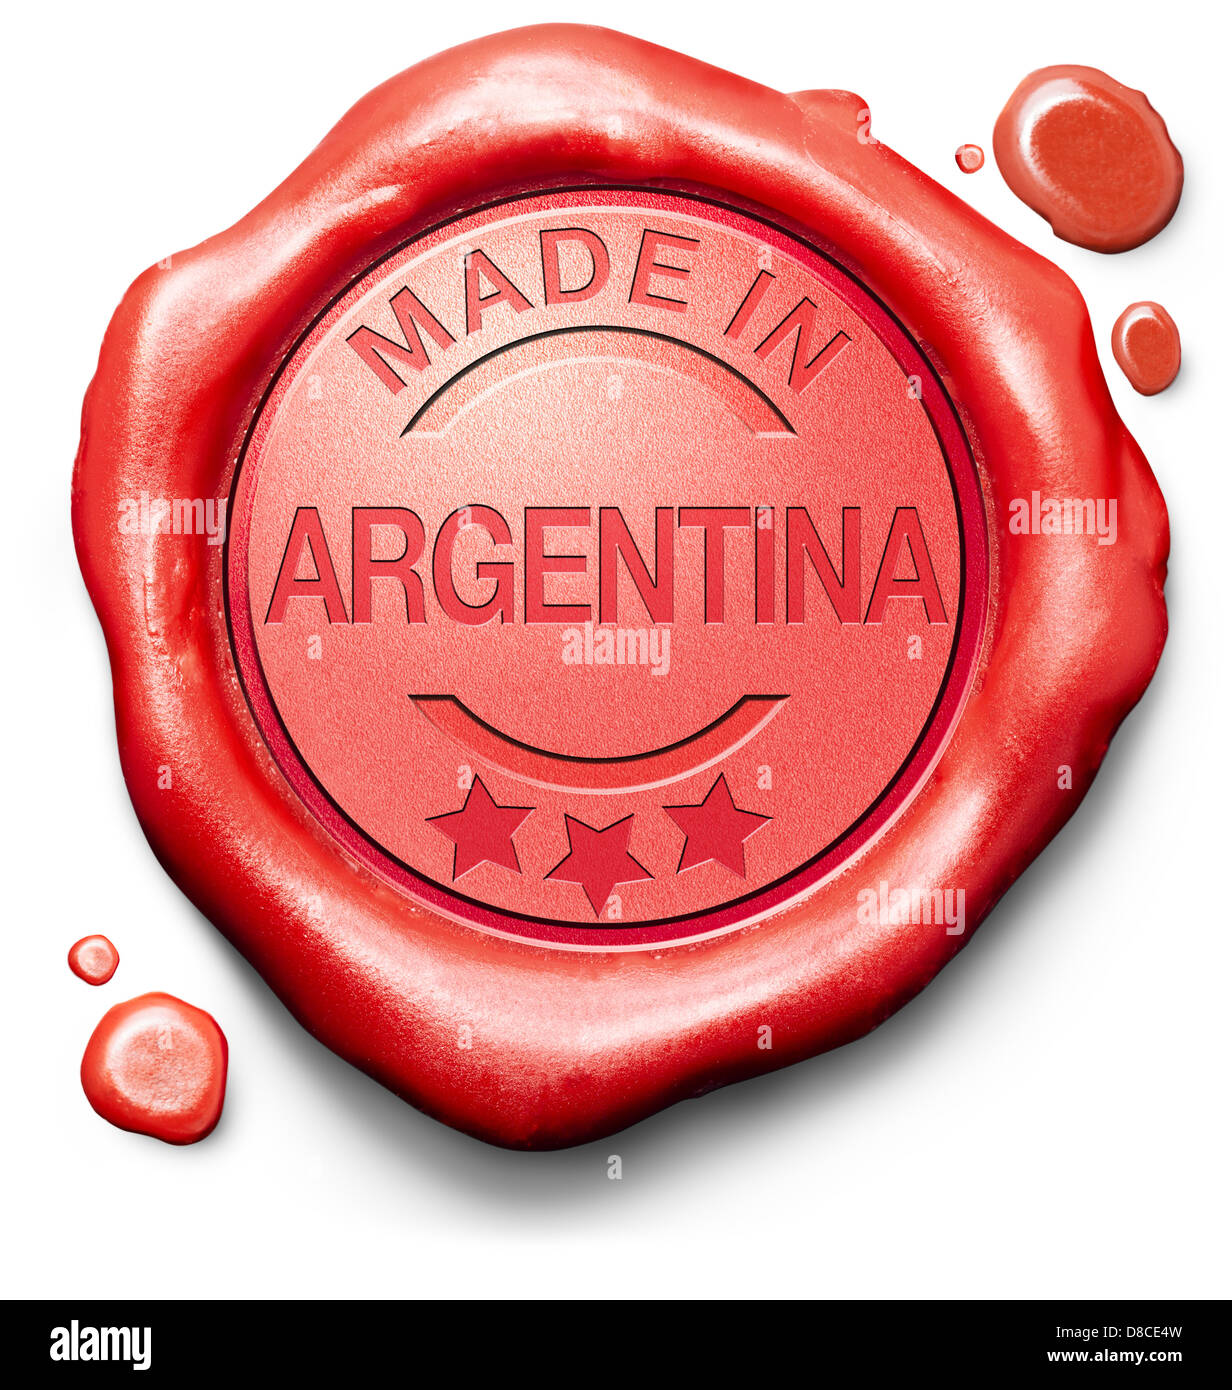 hergestellt in Argentinien Originalprodukt kaufen lokale kaufen authentische Argentinien Label rotes Wachs Stempel Qualitätssiegel Stockfoto